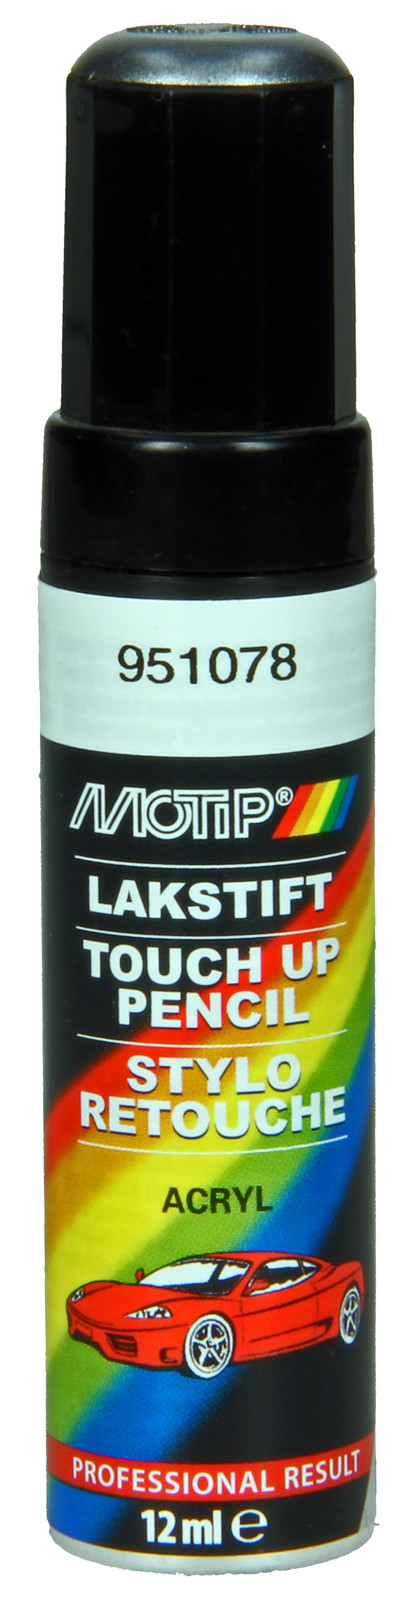 Motip 951078 Touch-up stick Kompakt, šedá 12ml